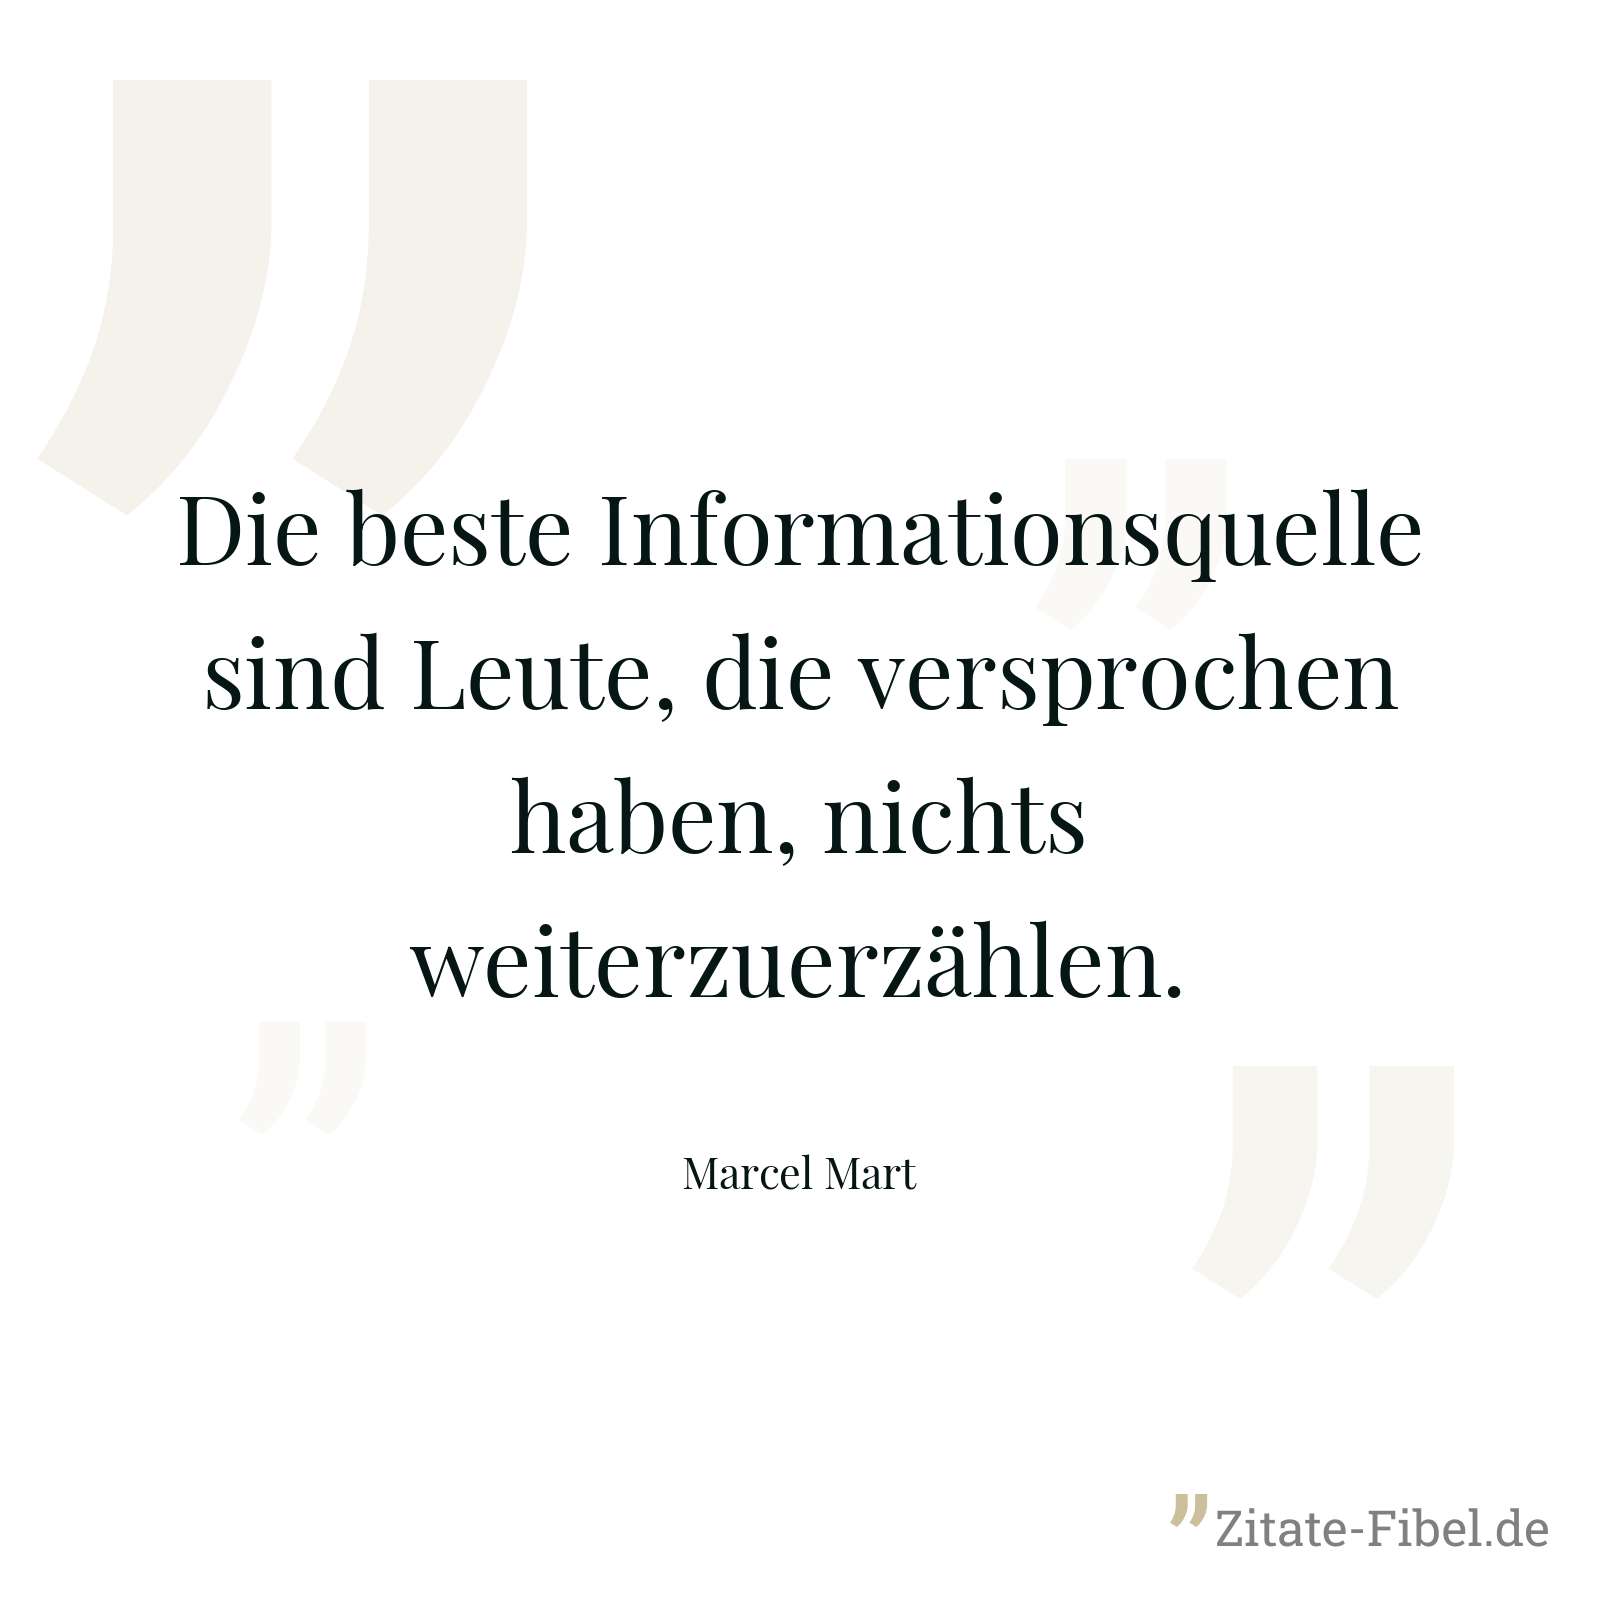 Die beste Informationsquelle sind Leute, die versprochen haben, nichts weiterzuerzählen. - Marcel Mart